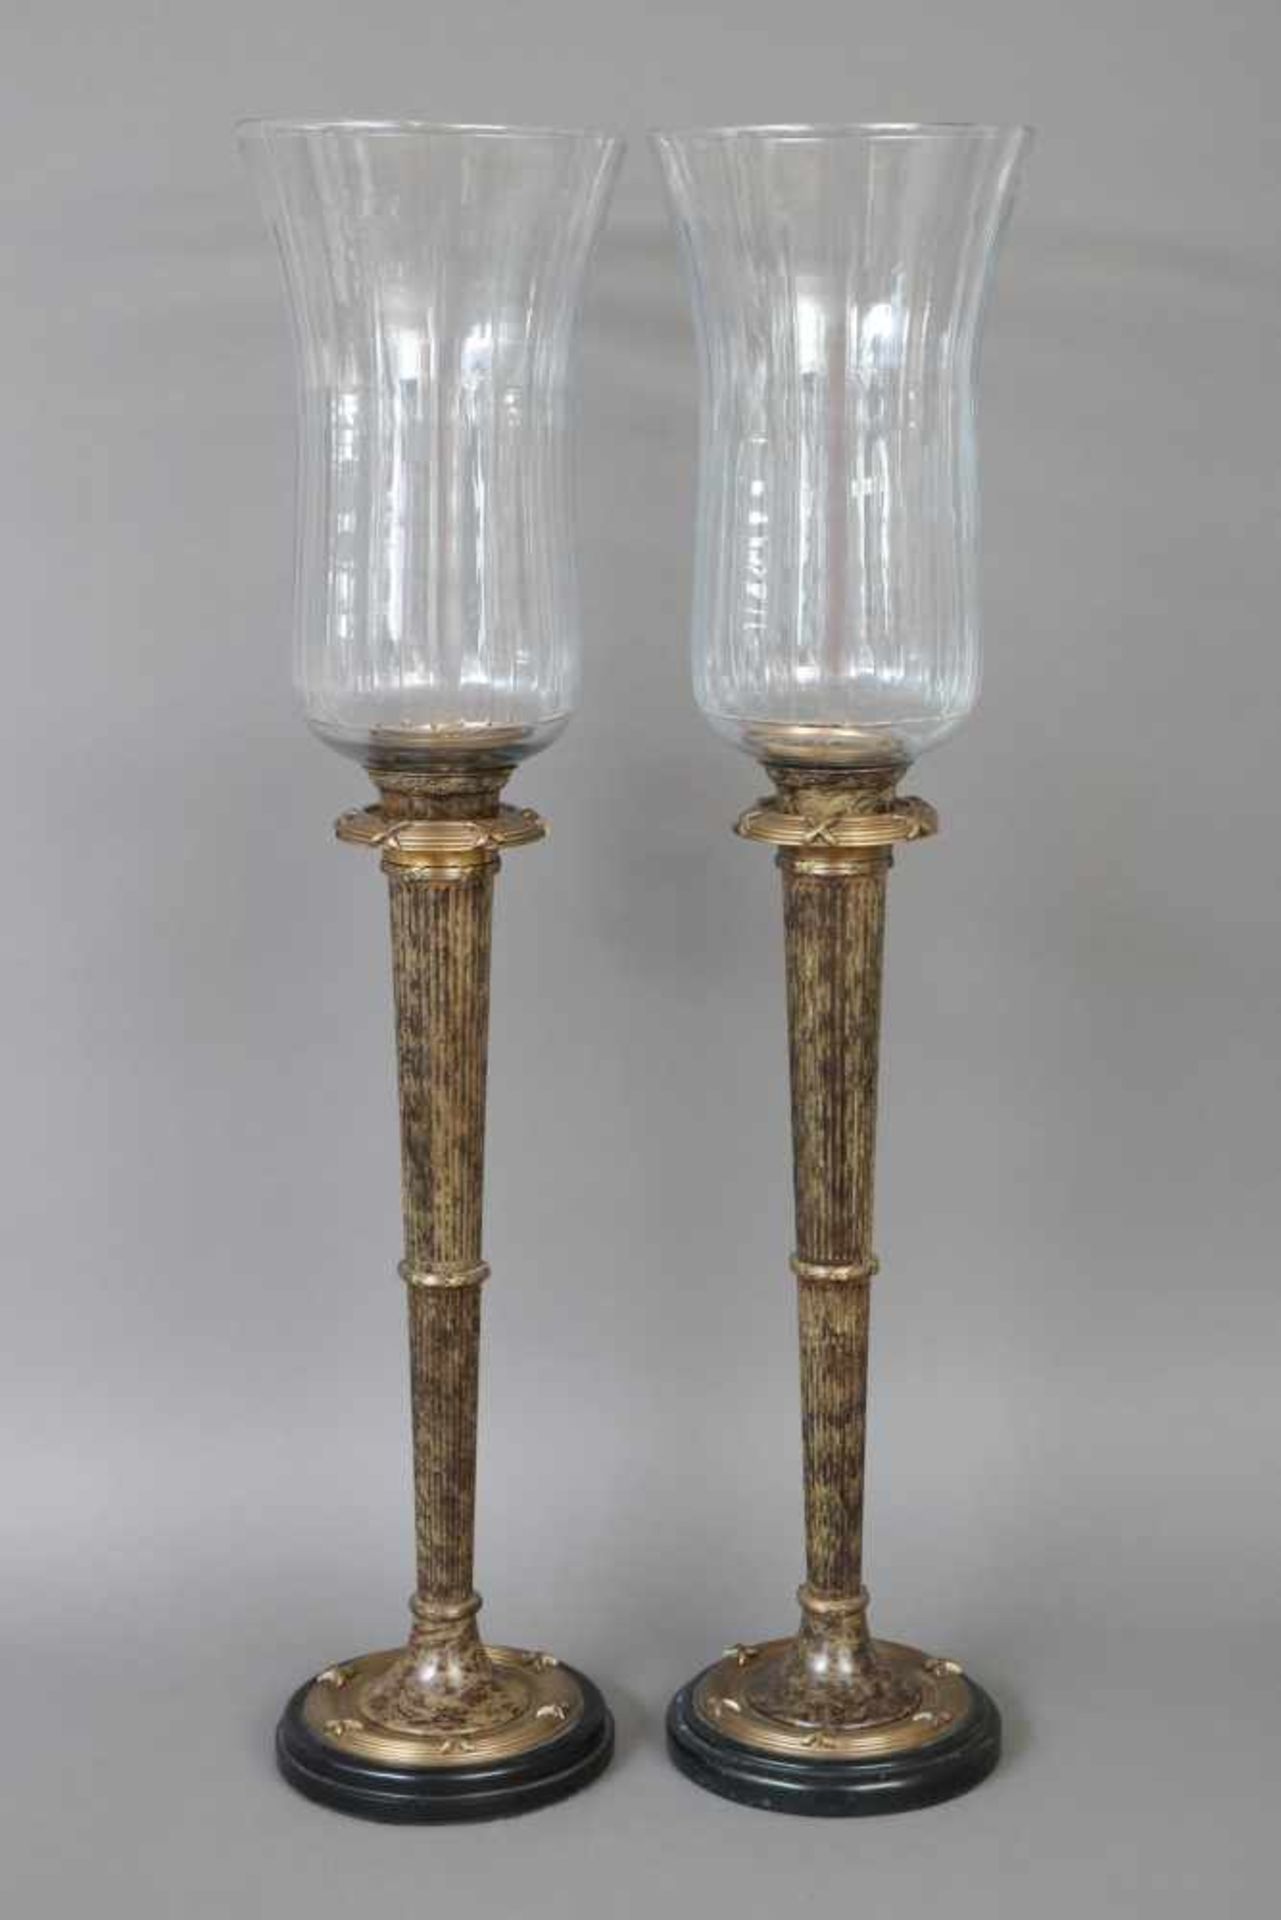 Paar hohe Windlichter im Stile des EmpireMessing und Glas, hoher, kannelierter Säulenstand, Rundfuß,